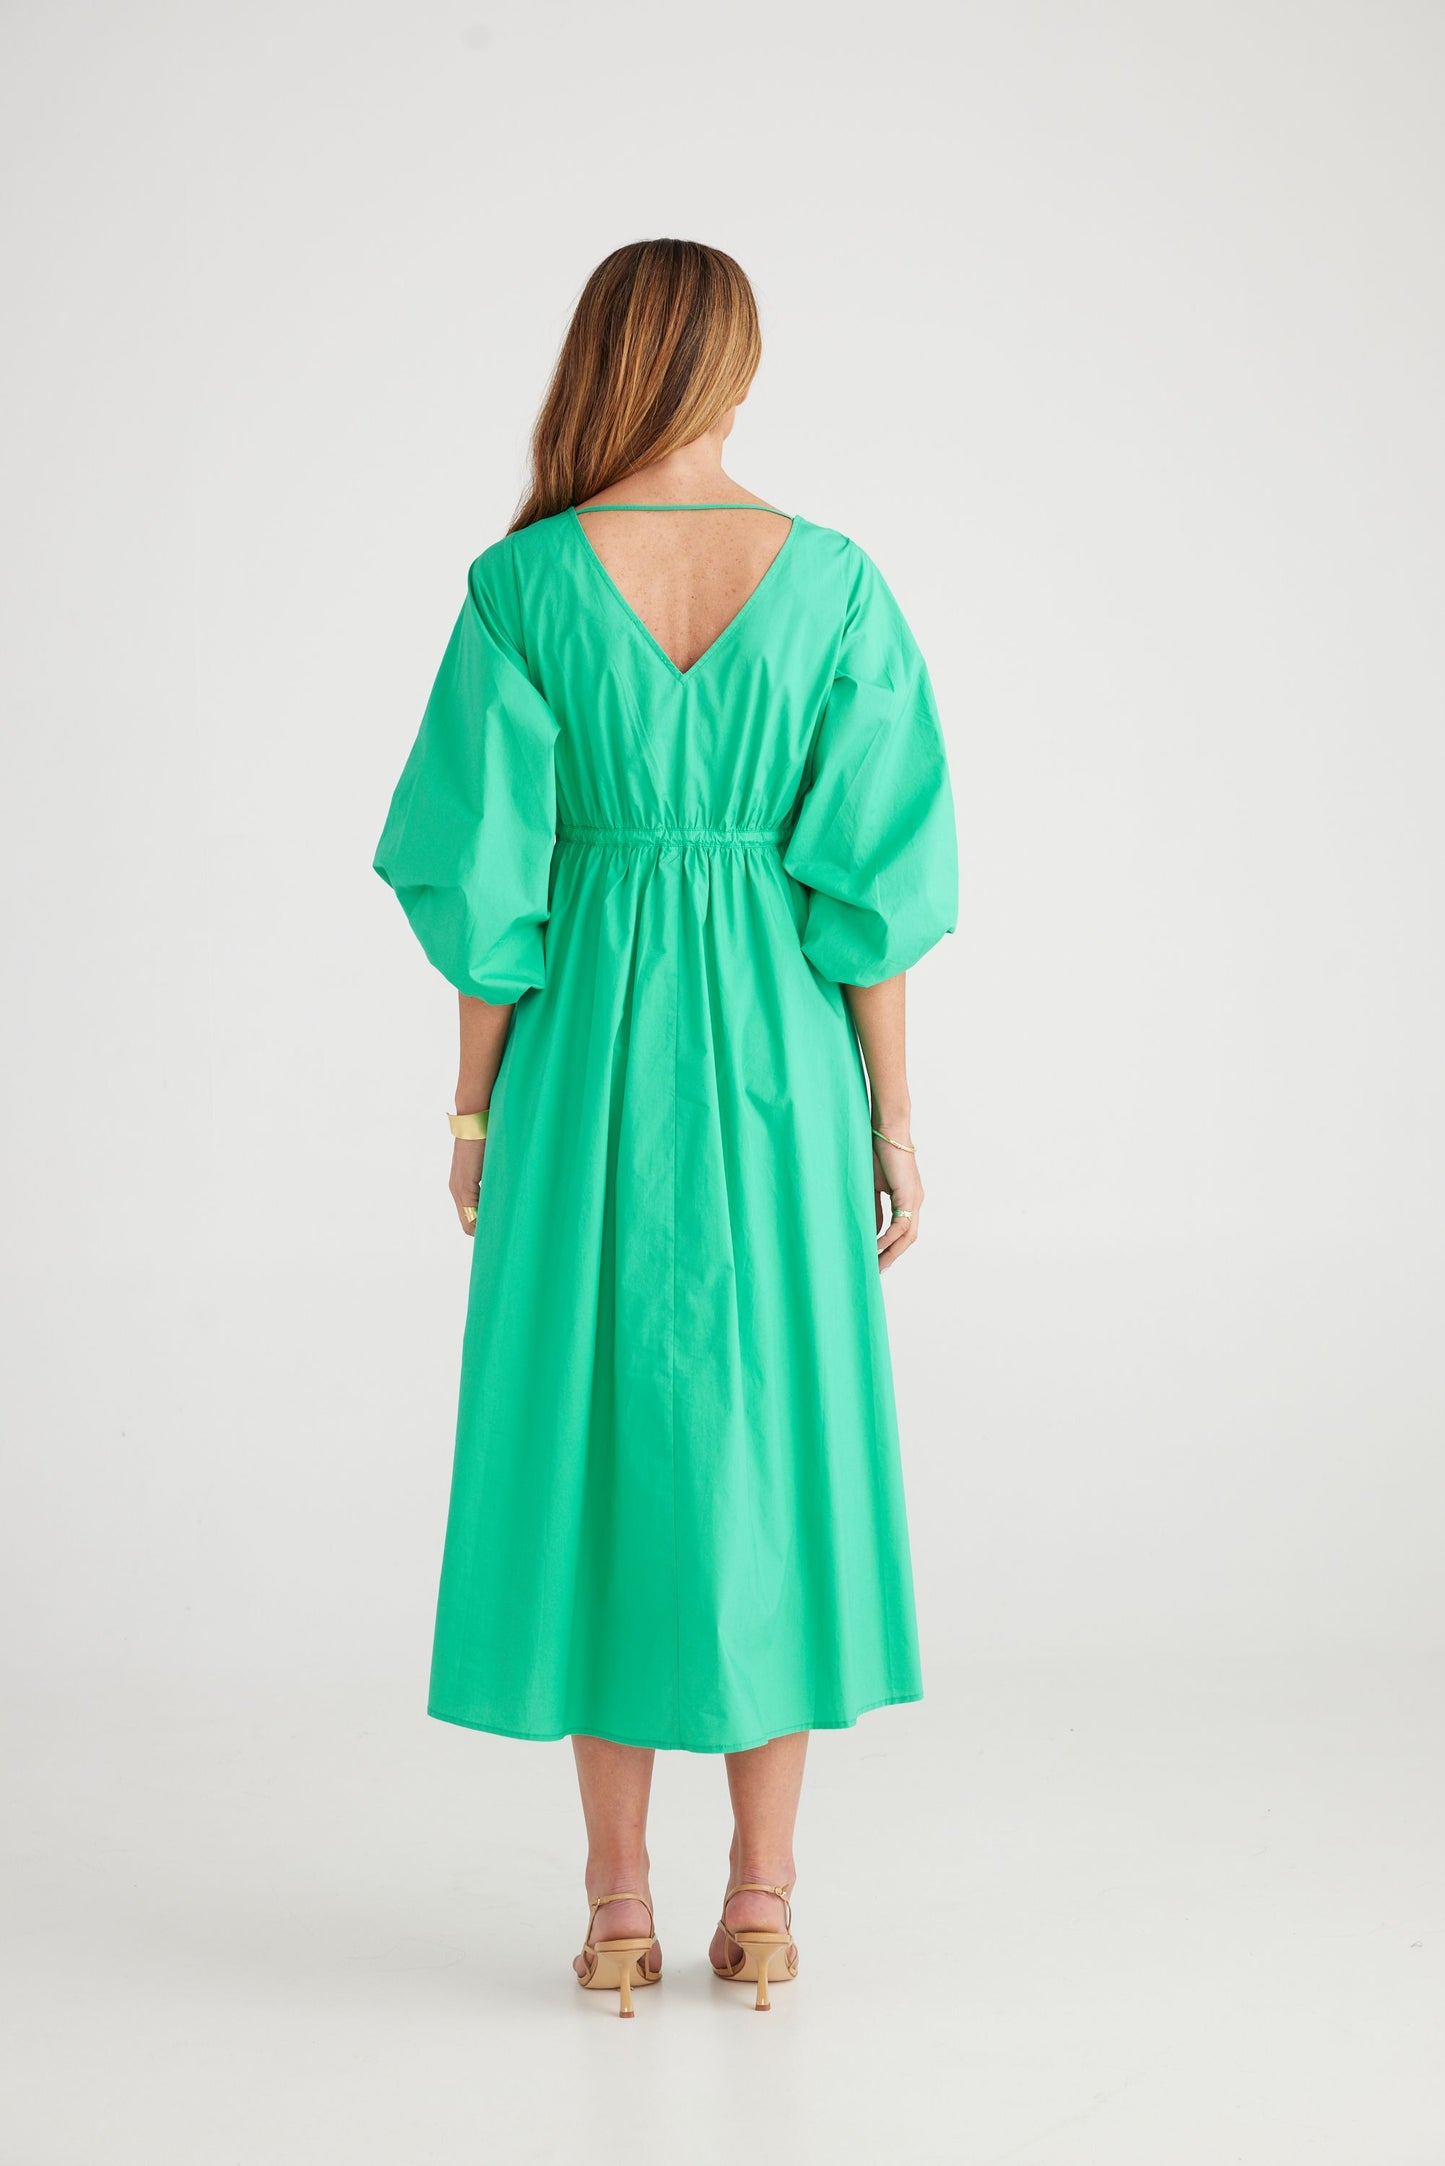 Sunshine Dress (Green)